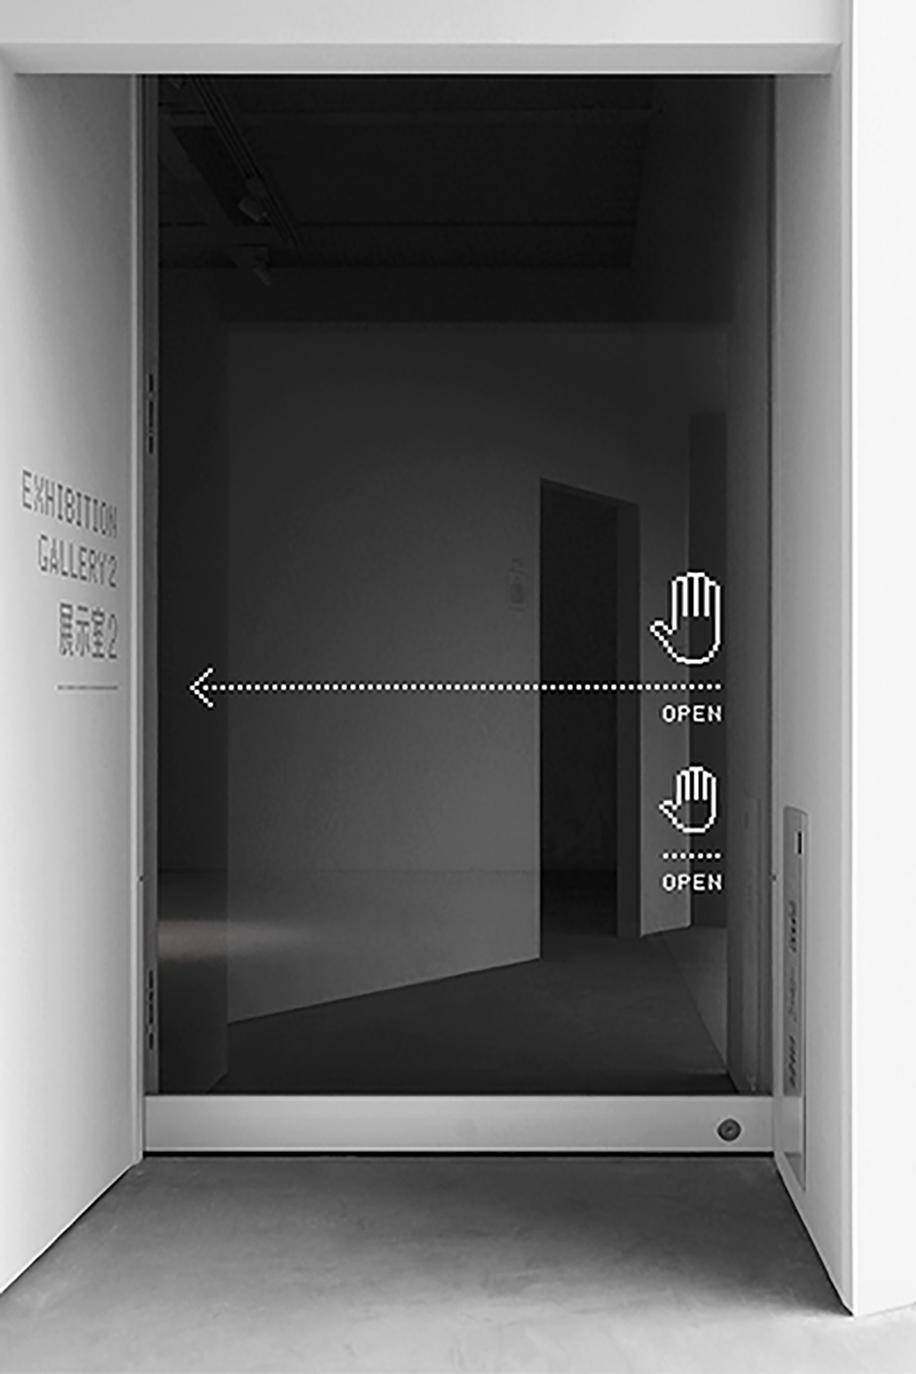 センサー式の自動ドア